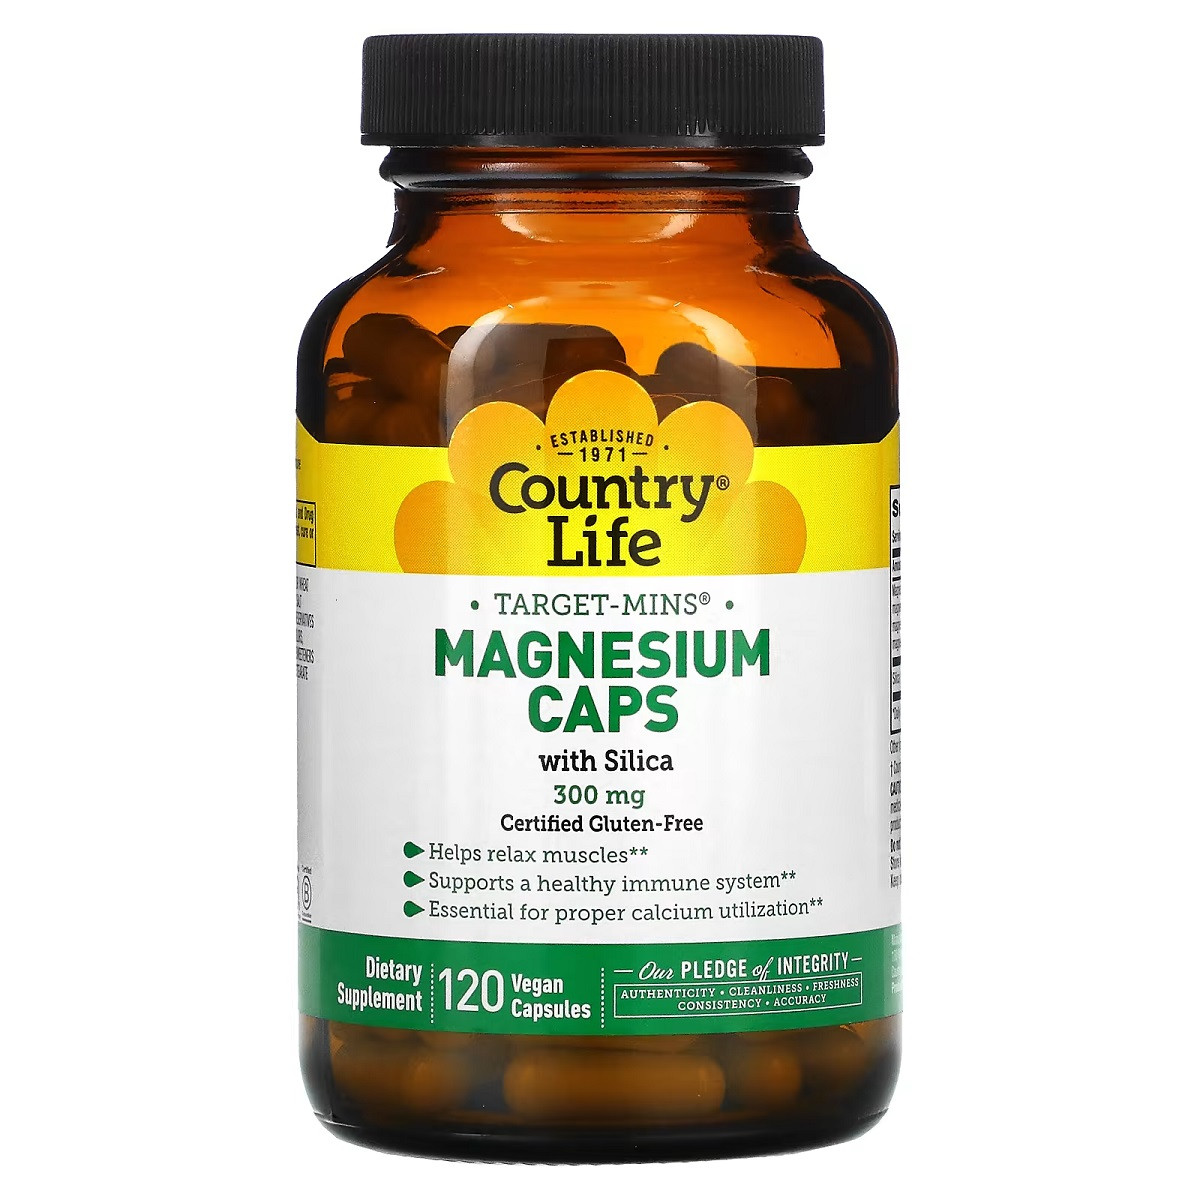 Магній із кремнієм, 300 мг, Target-Mins, Magnesium Caps with Silica, Country Life, 120 вегетаріанських капсул